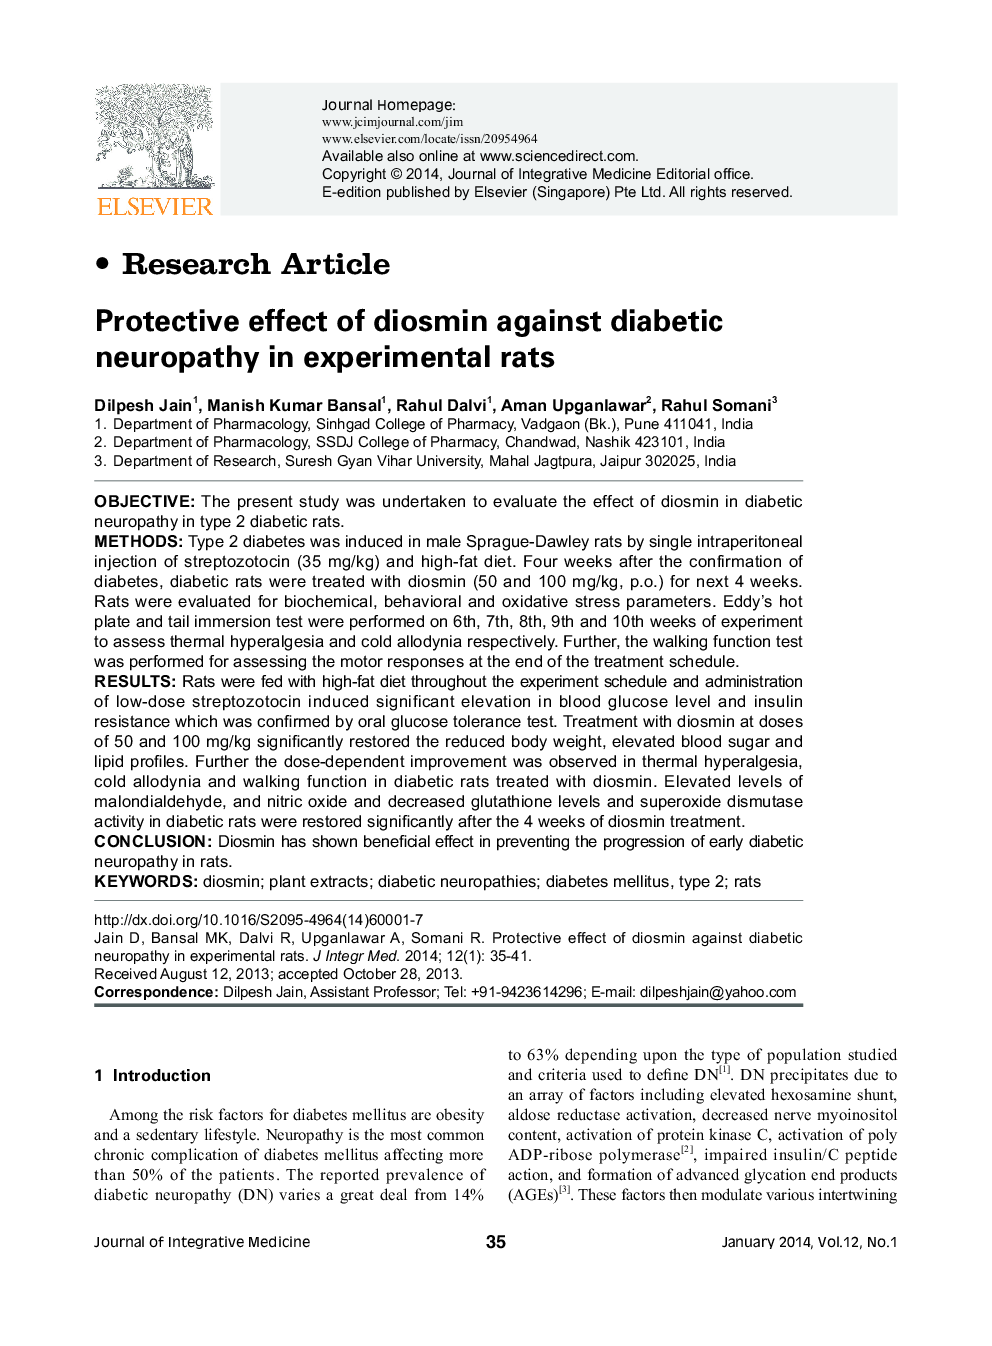 اثر محافظتی دایسمین بر نوروپاتی دیابتی در موش های آزمایشی 